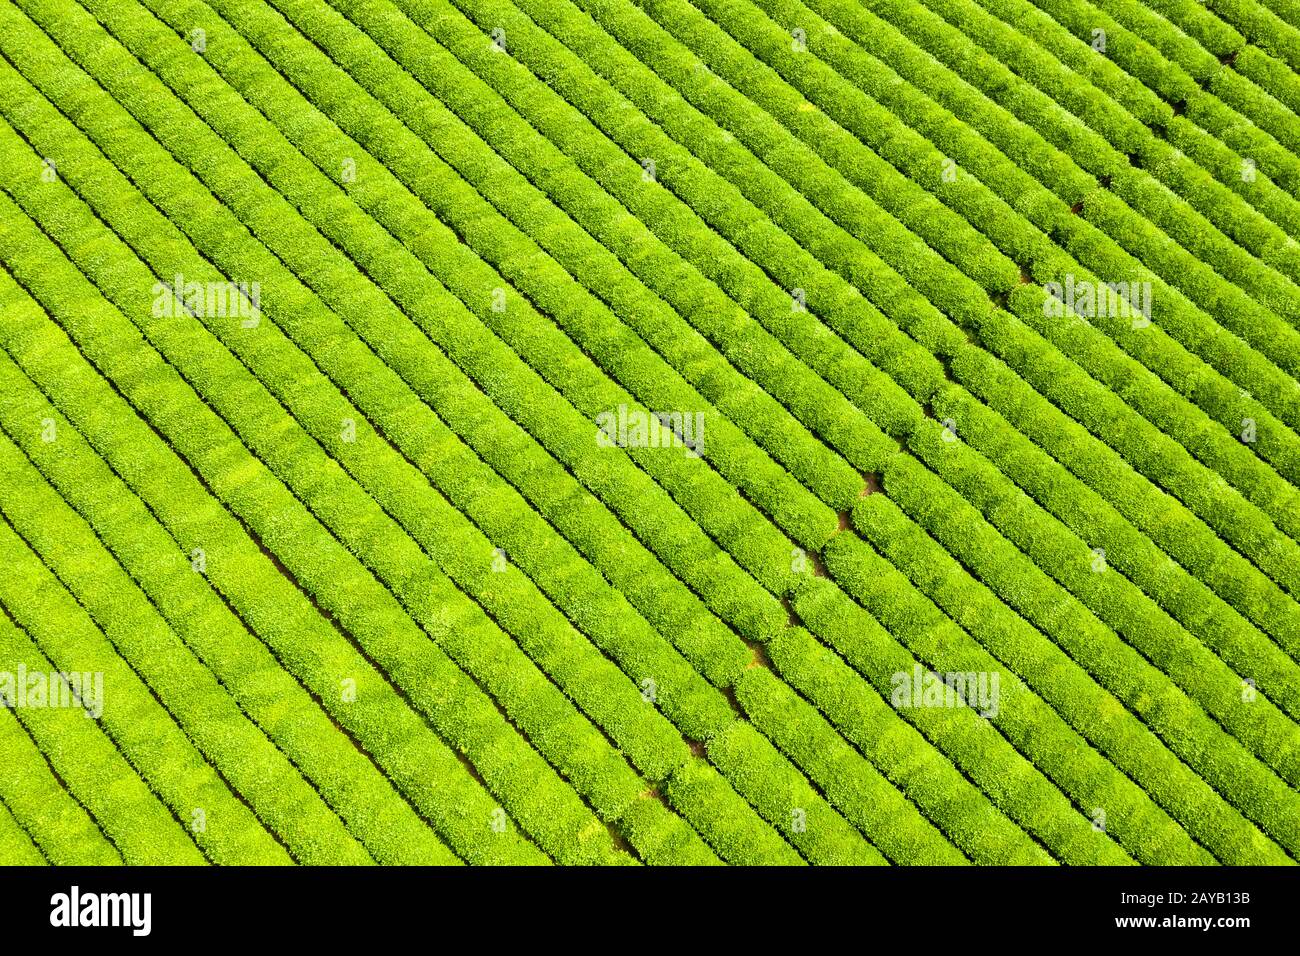 sfondo piantagione di tè Foto Stock